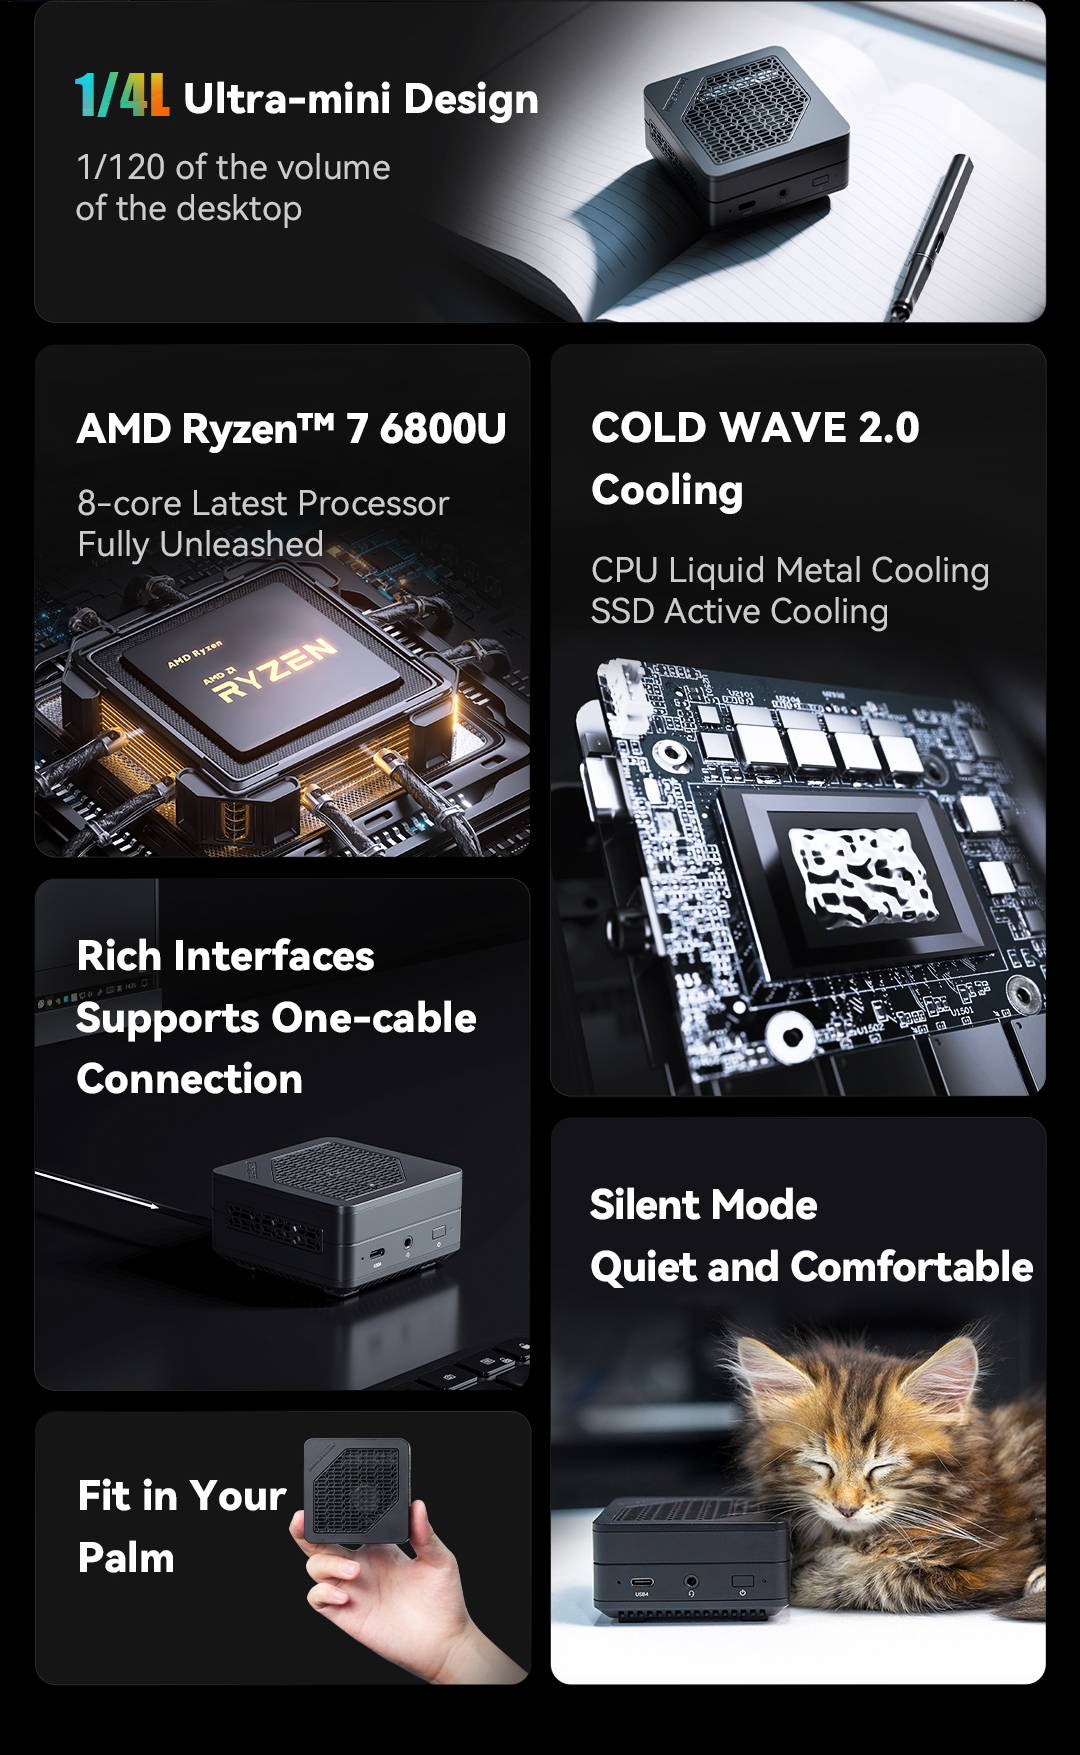 Palm-Sized Minisforum EM680 Desktop PC Packs AMD's Ryzen 7 6800U and USB4